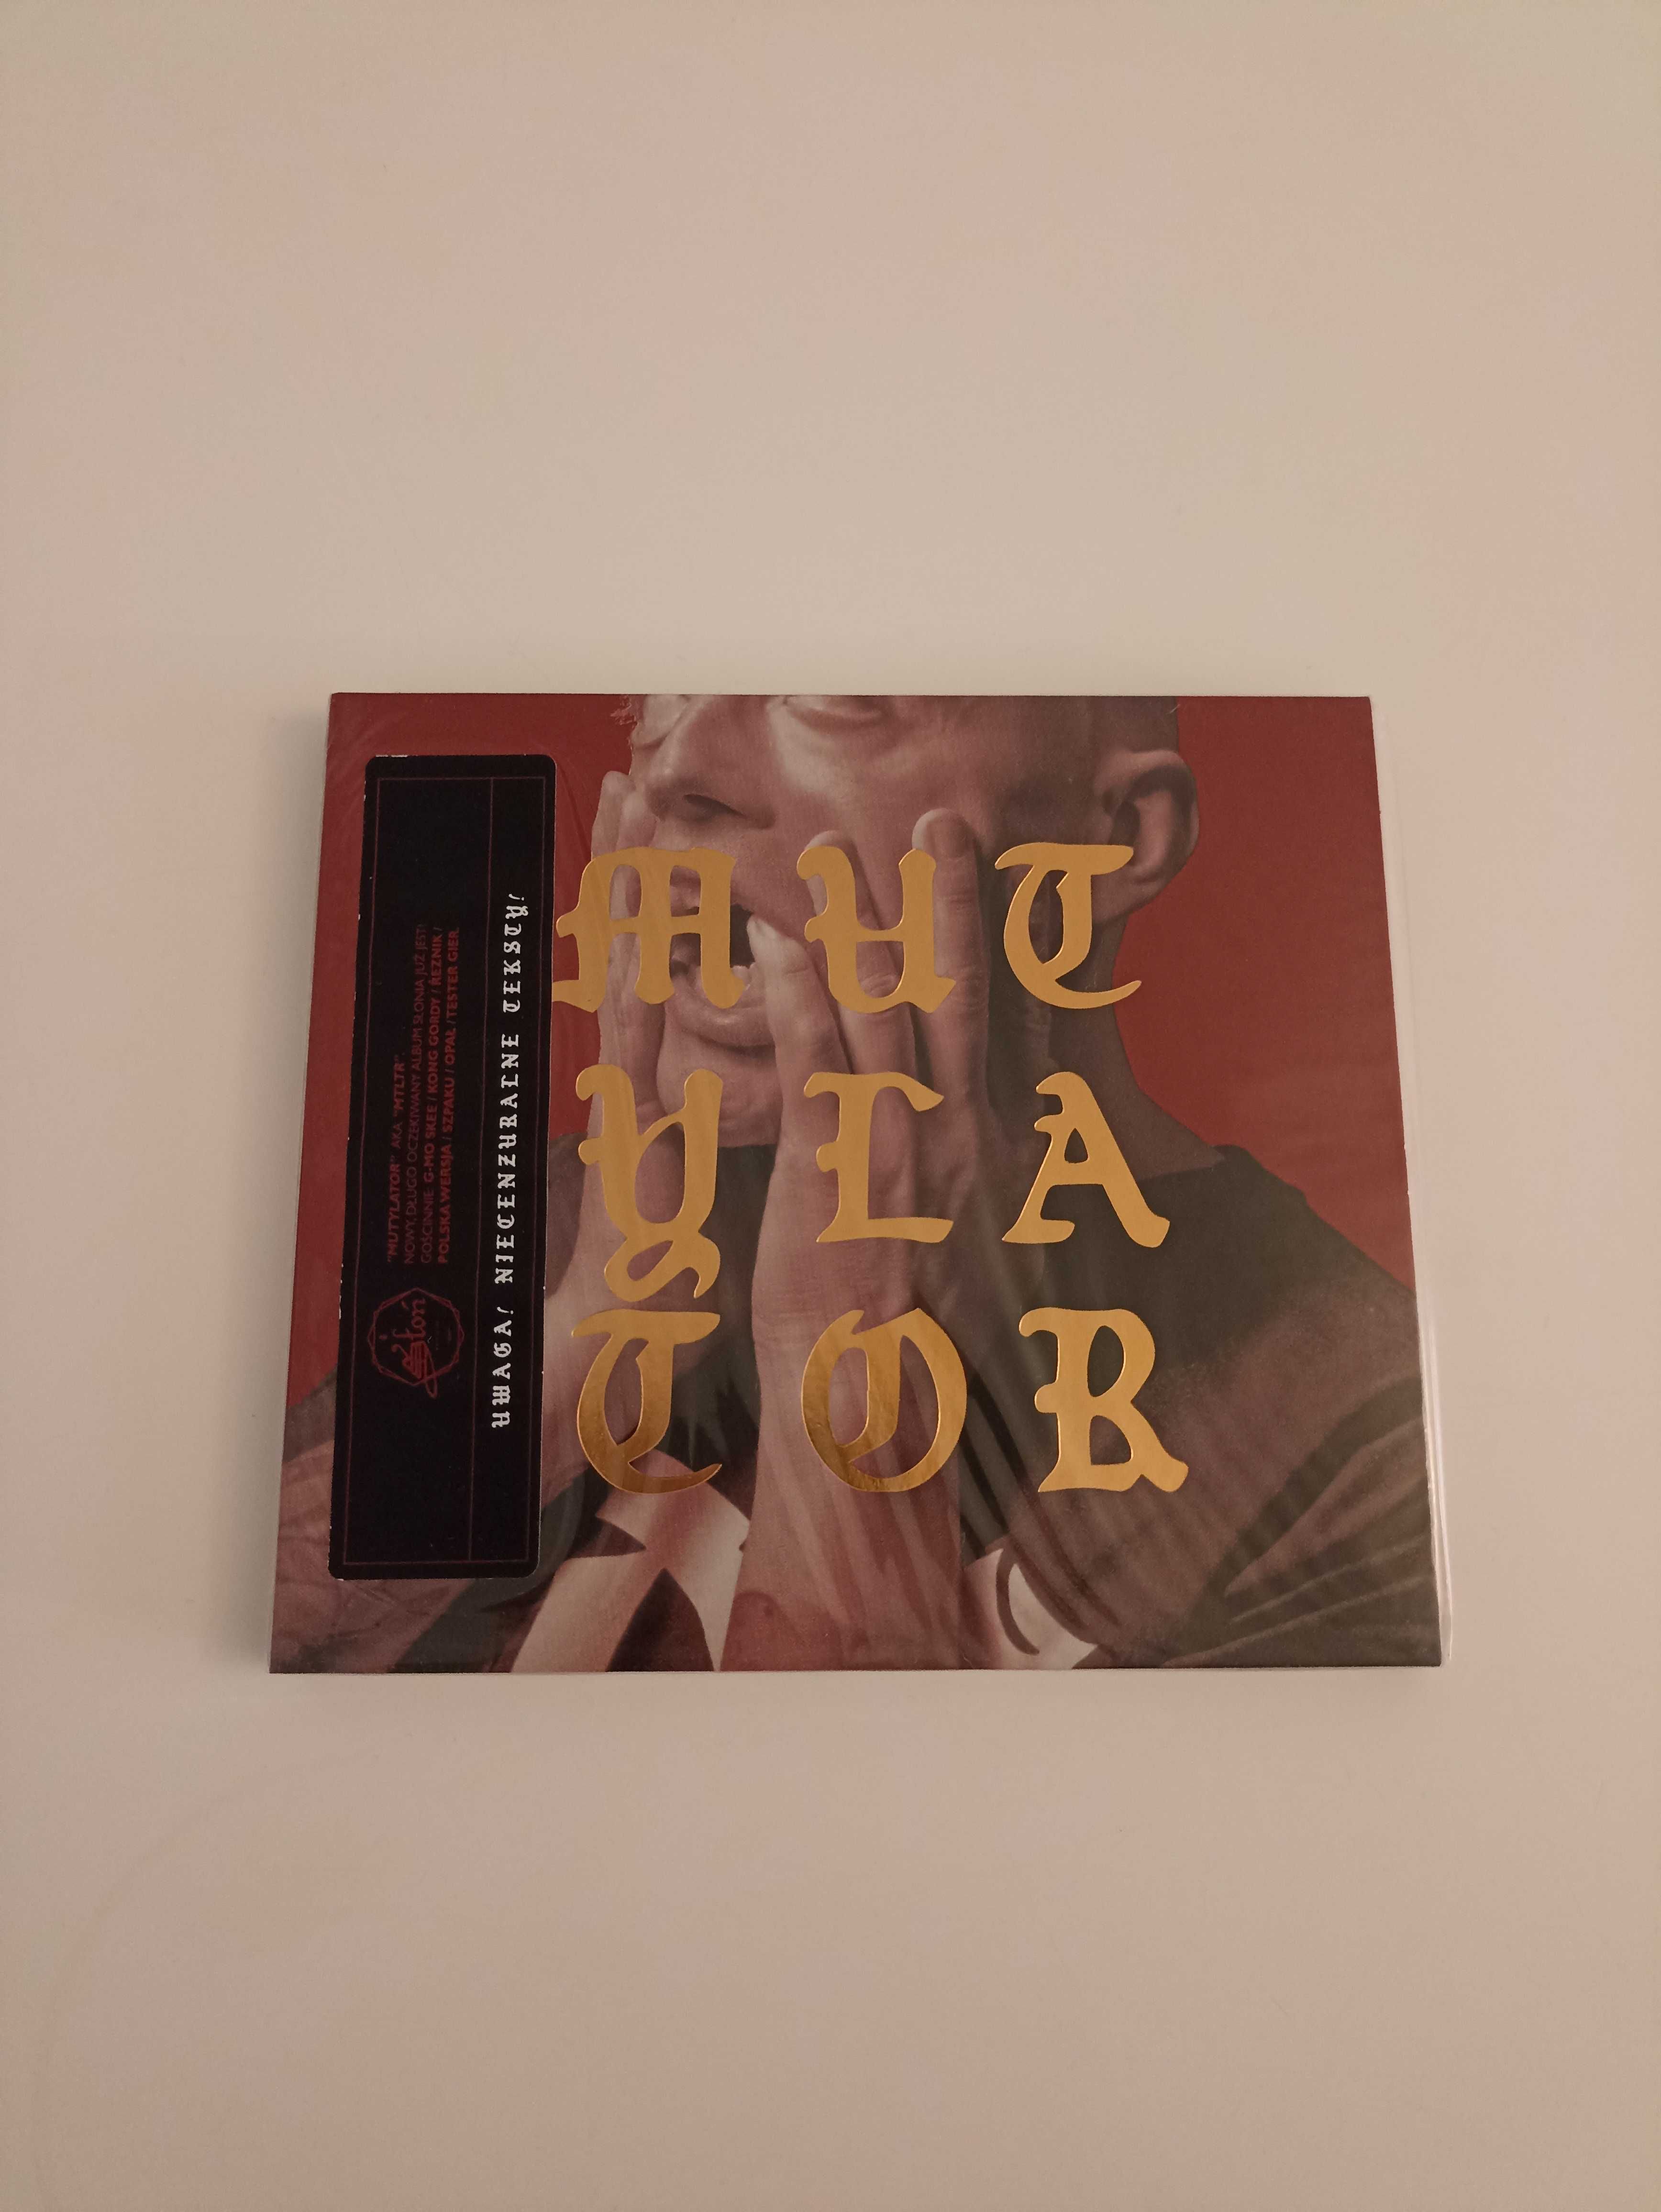 Słoń - Mutylator - Płyta CD, nowa w folii